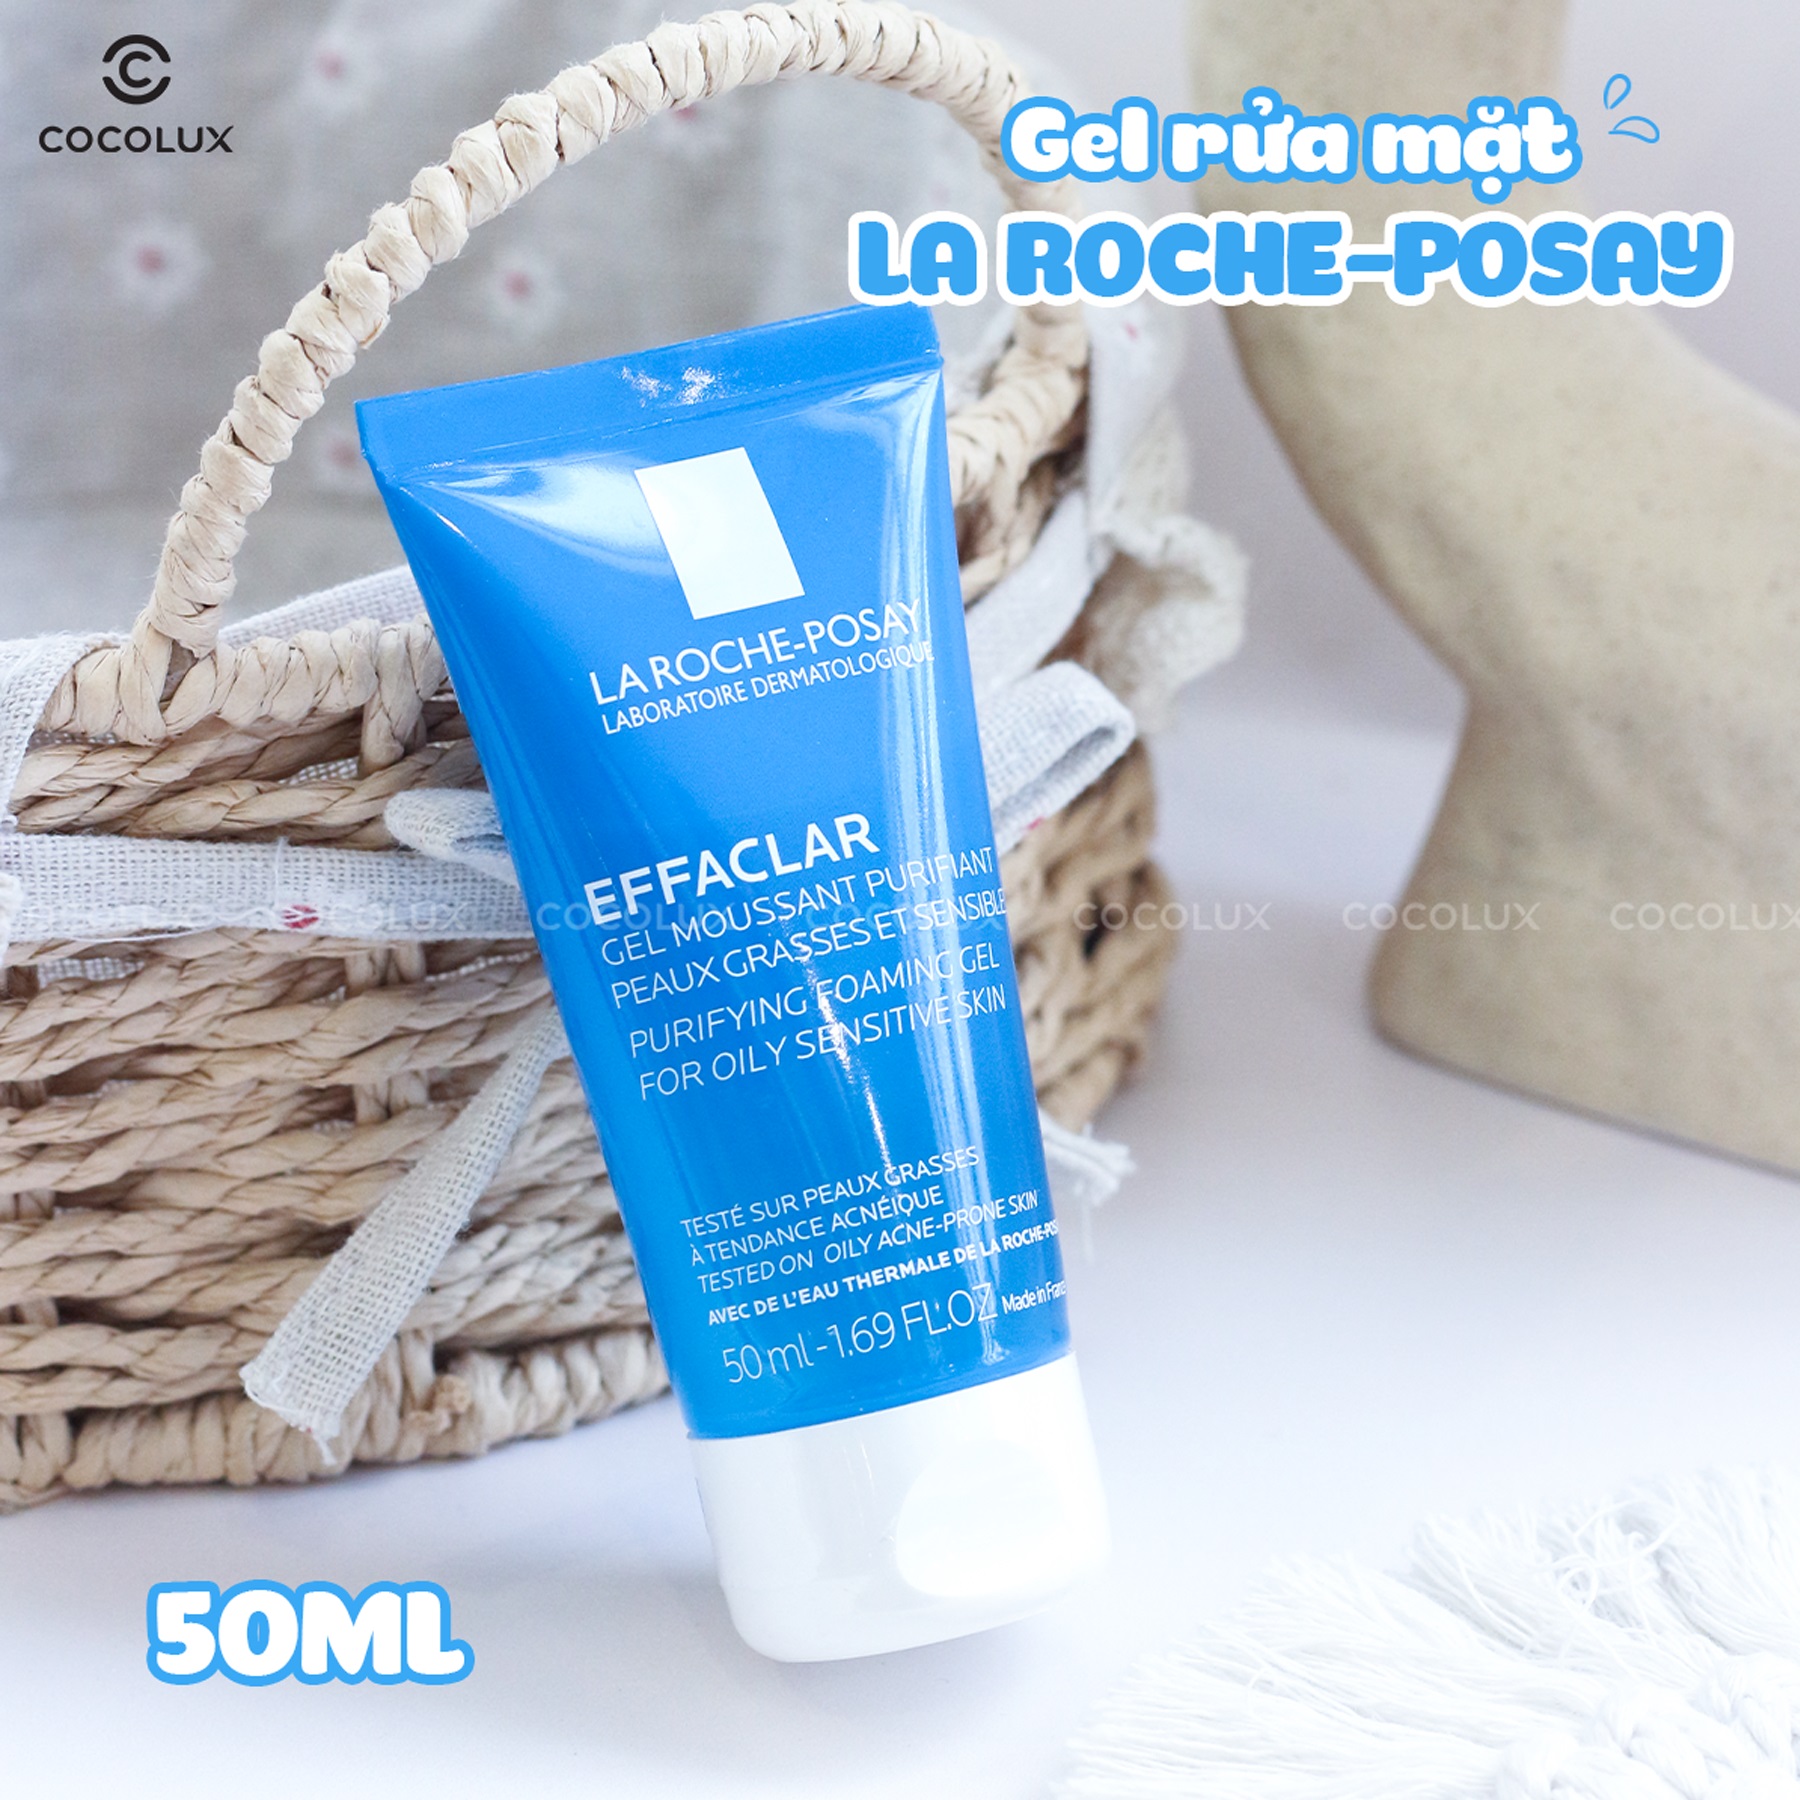 Bộ Sản Phẩm La Roche-Posay Tẩy Trang Effaclar 400ml + Sữa Rửa Mặt Effaclar 50ml Làm Sạch Sâu Cho Da Dầu Mụn